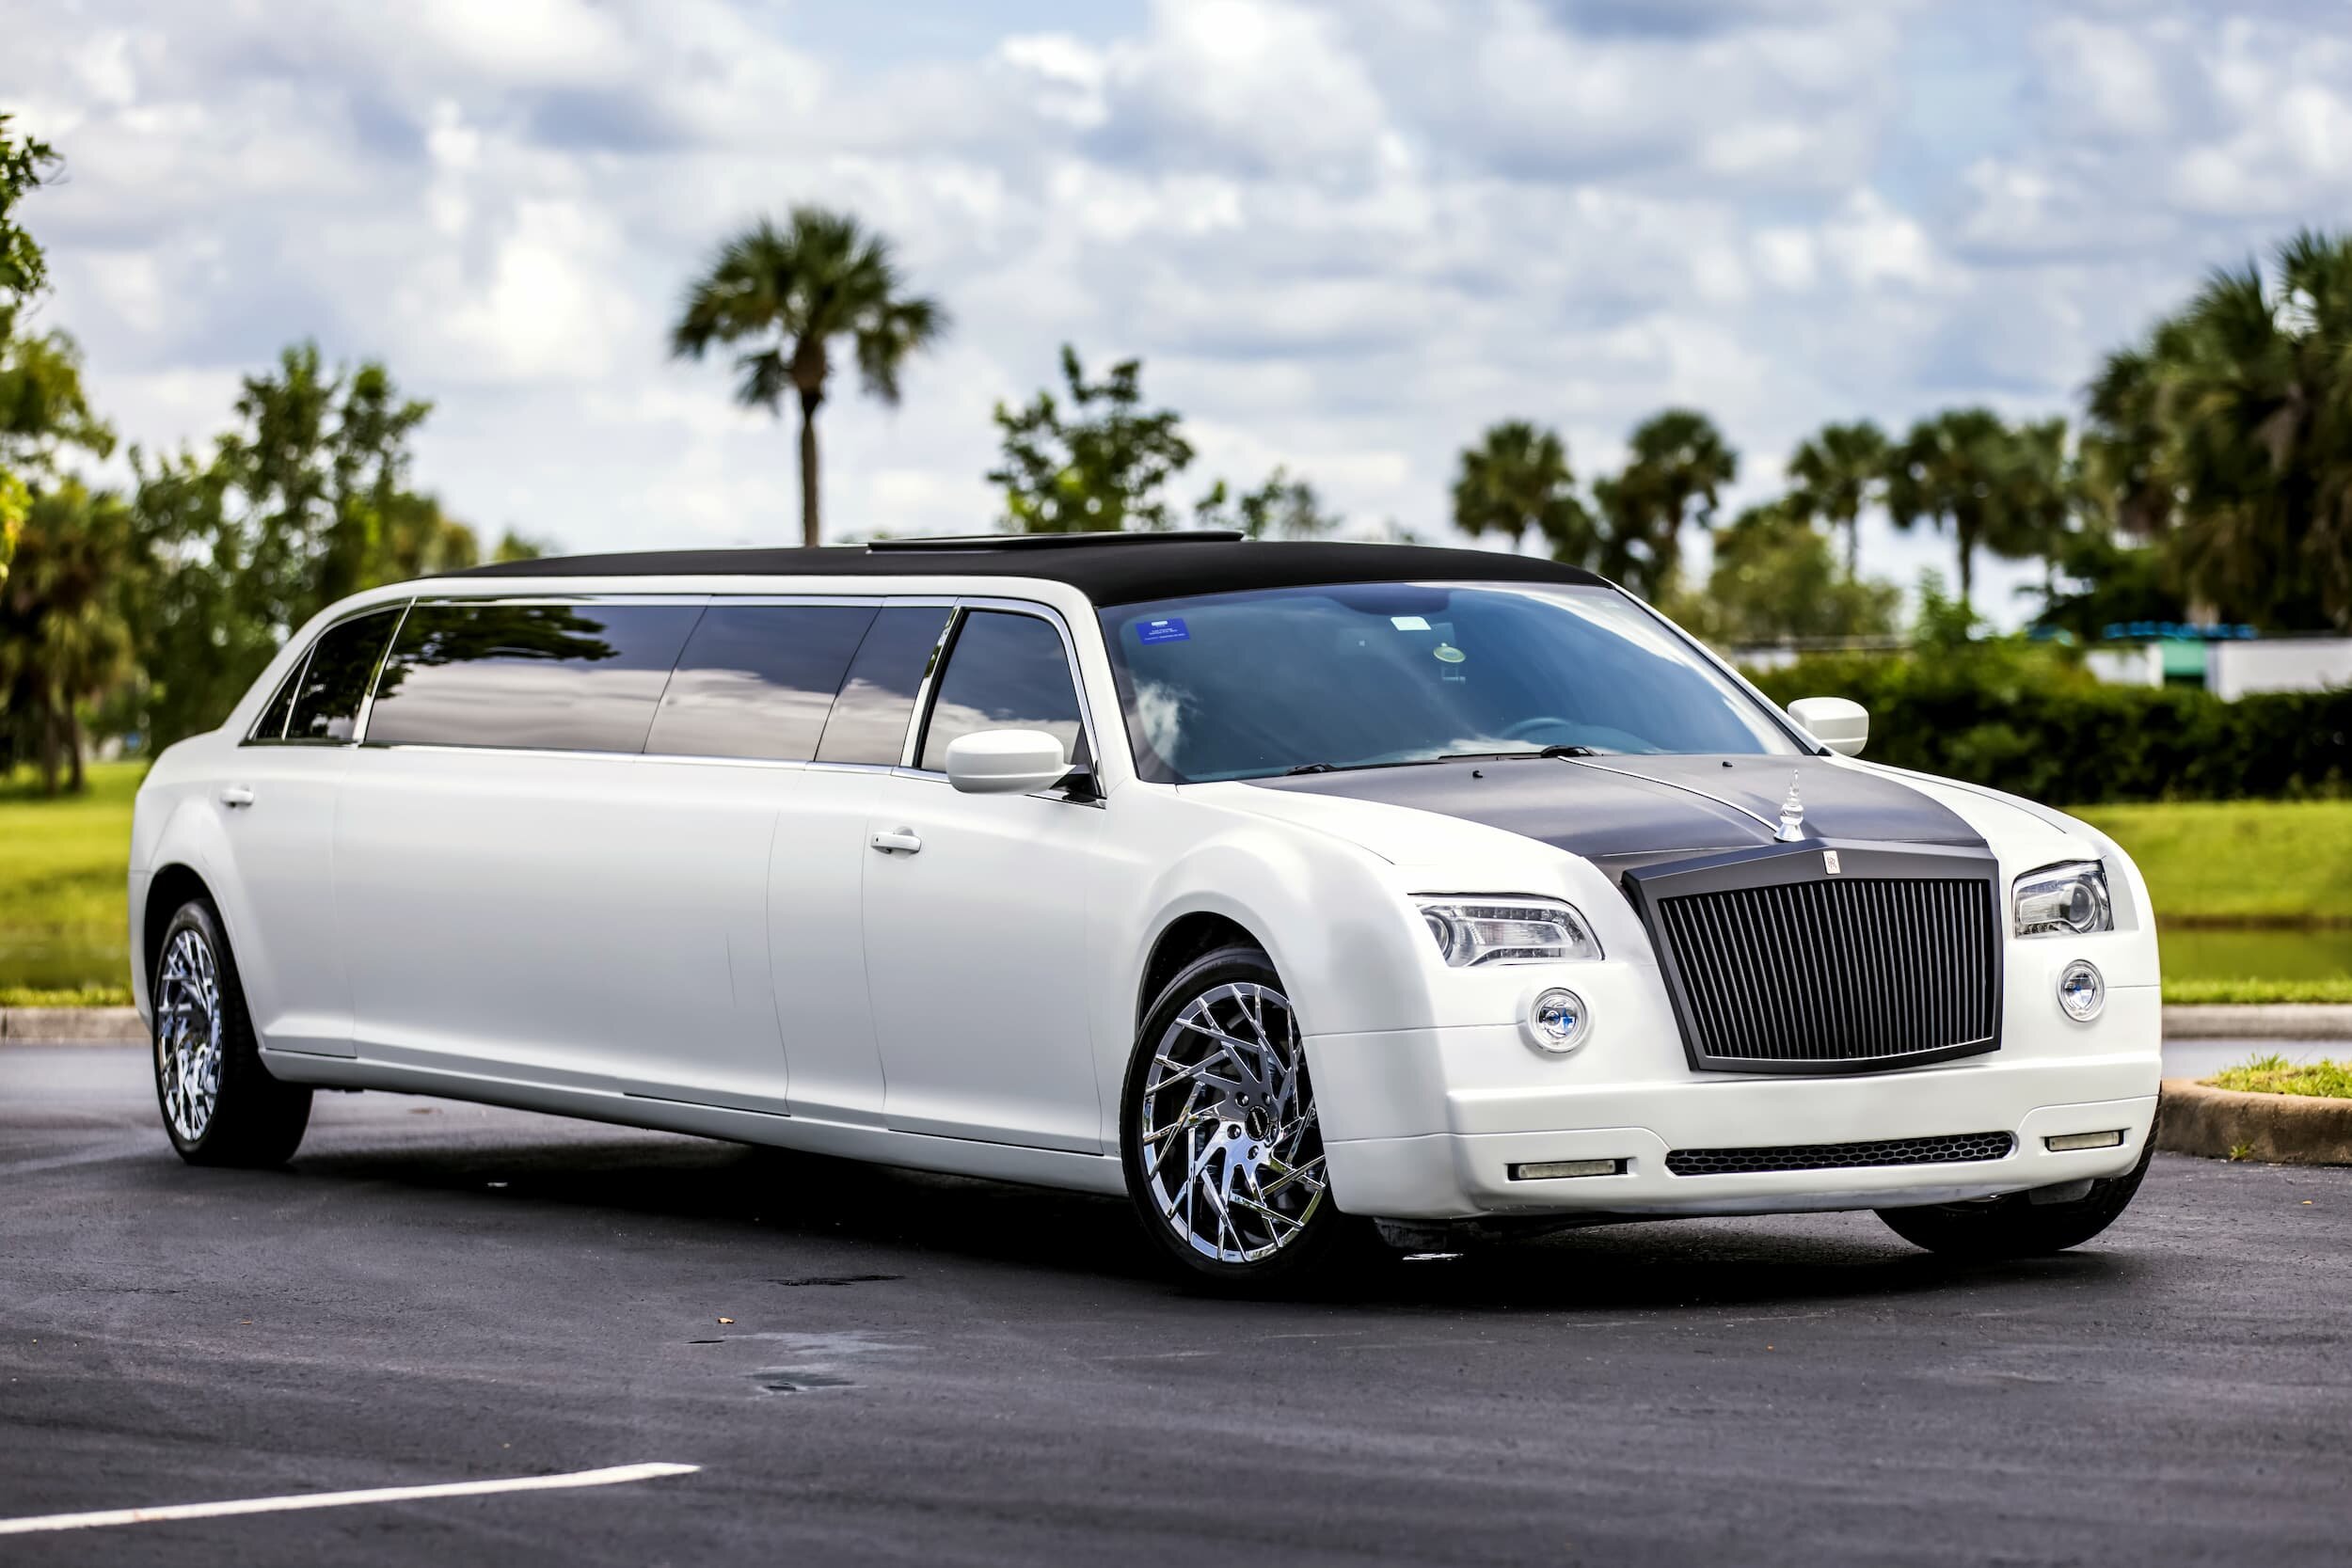 Is Limousine a Rolls Royce?